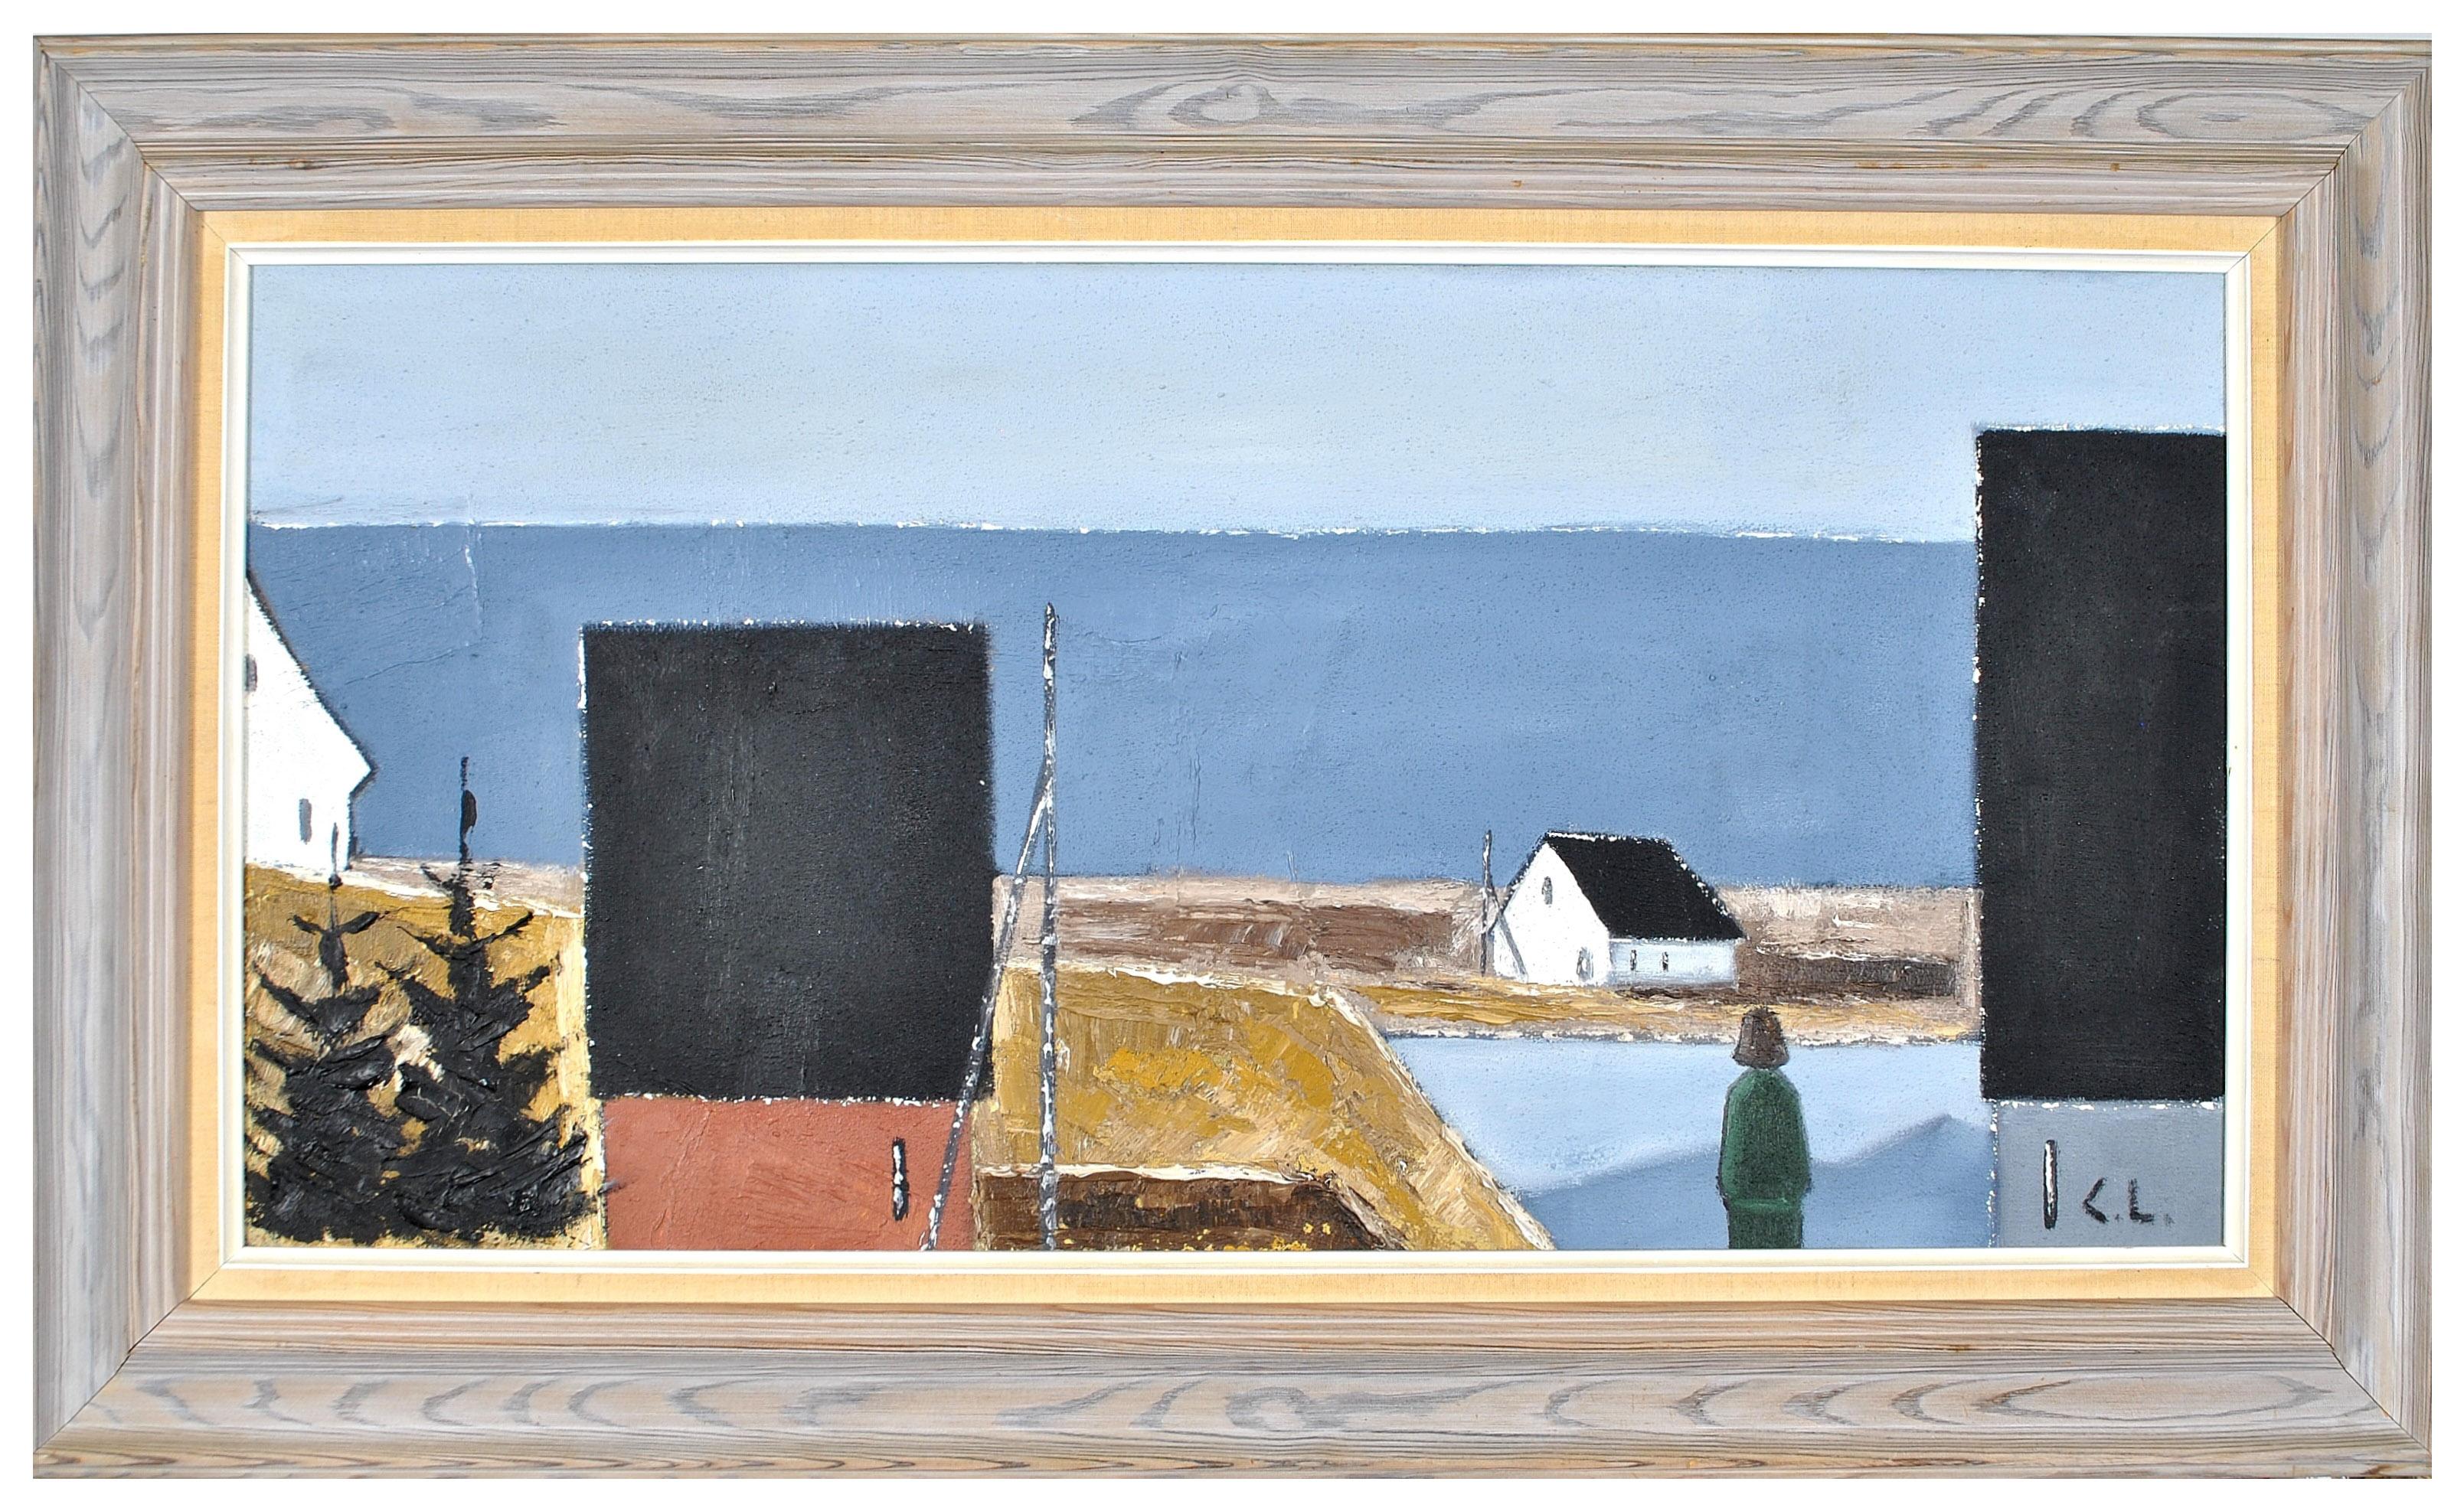 Landscape Painting Mid 20th Century Swedish School - Paysage côtier - Grande peinture scandinave moderniste suédoise du milieu du siècle dernier